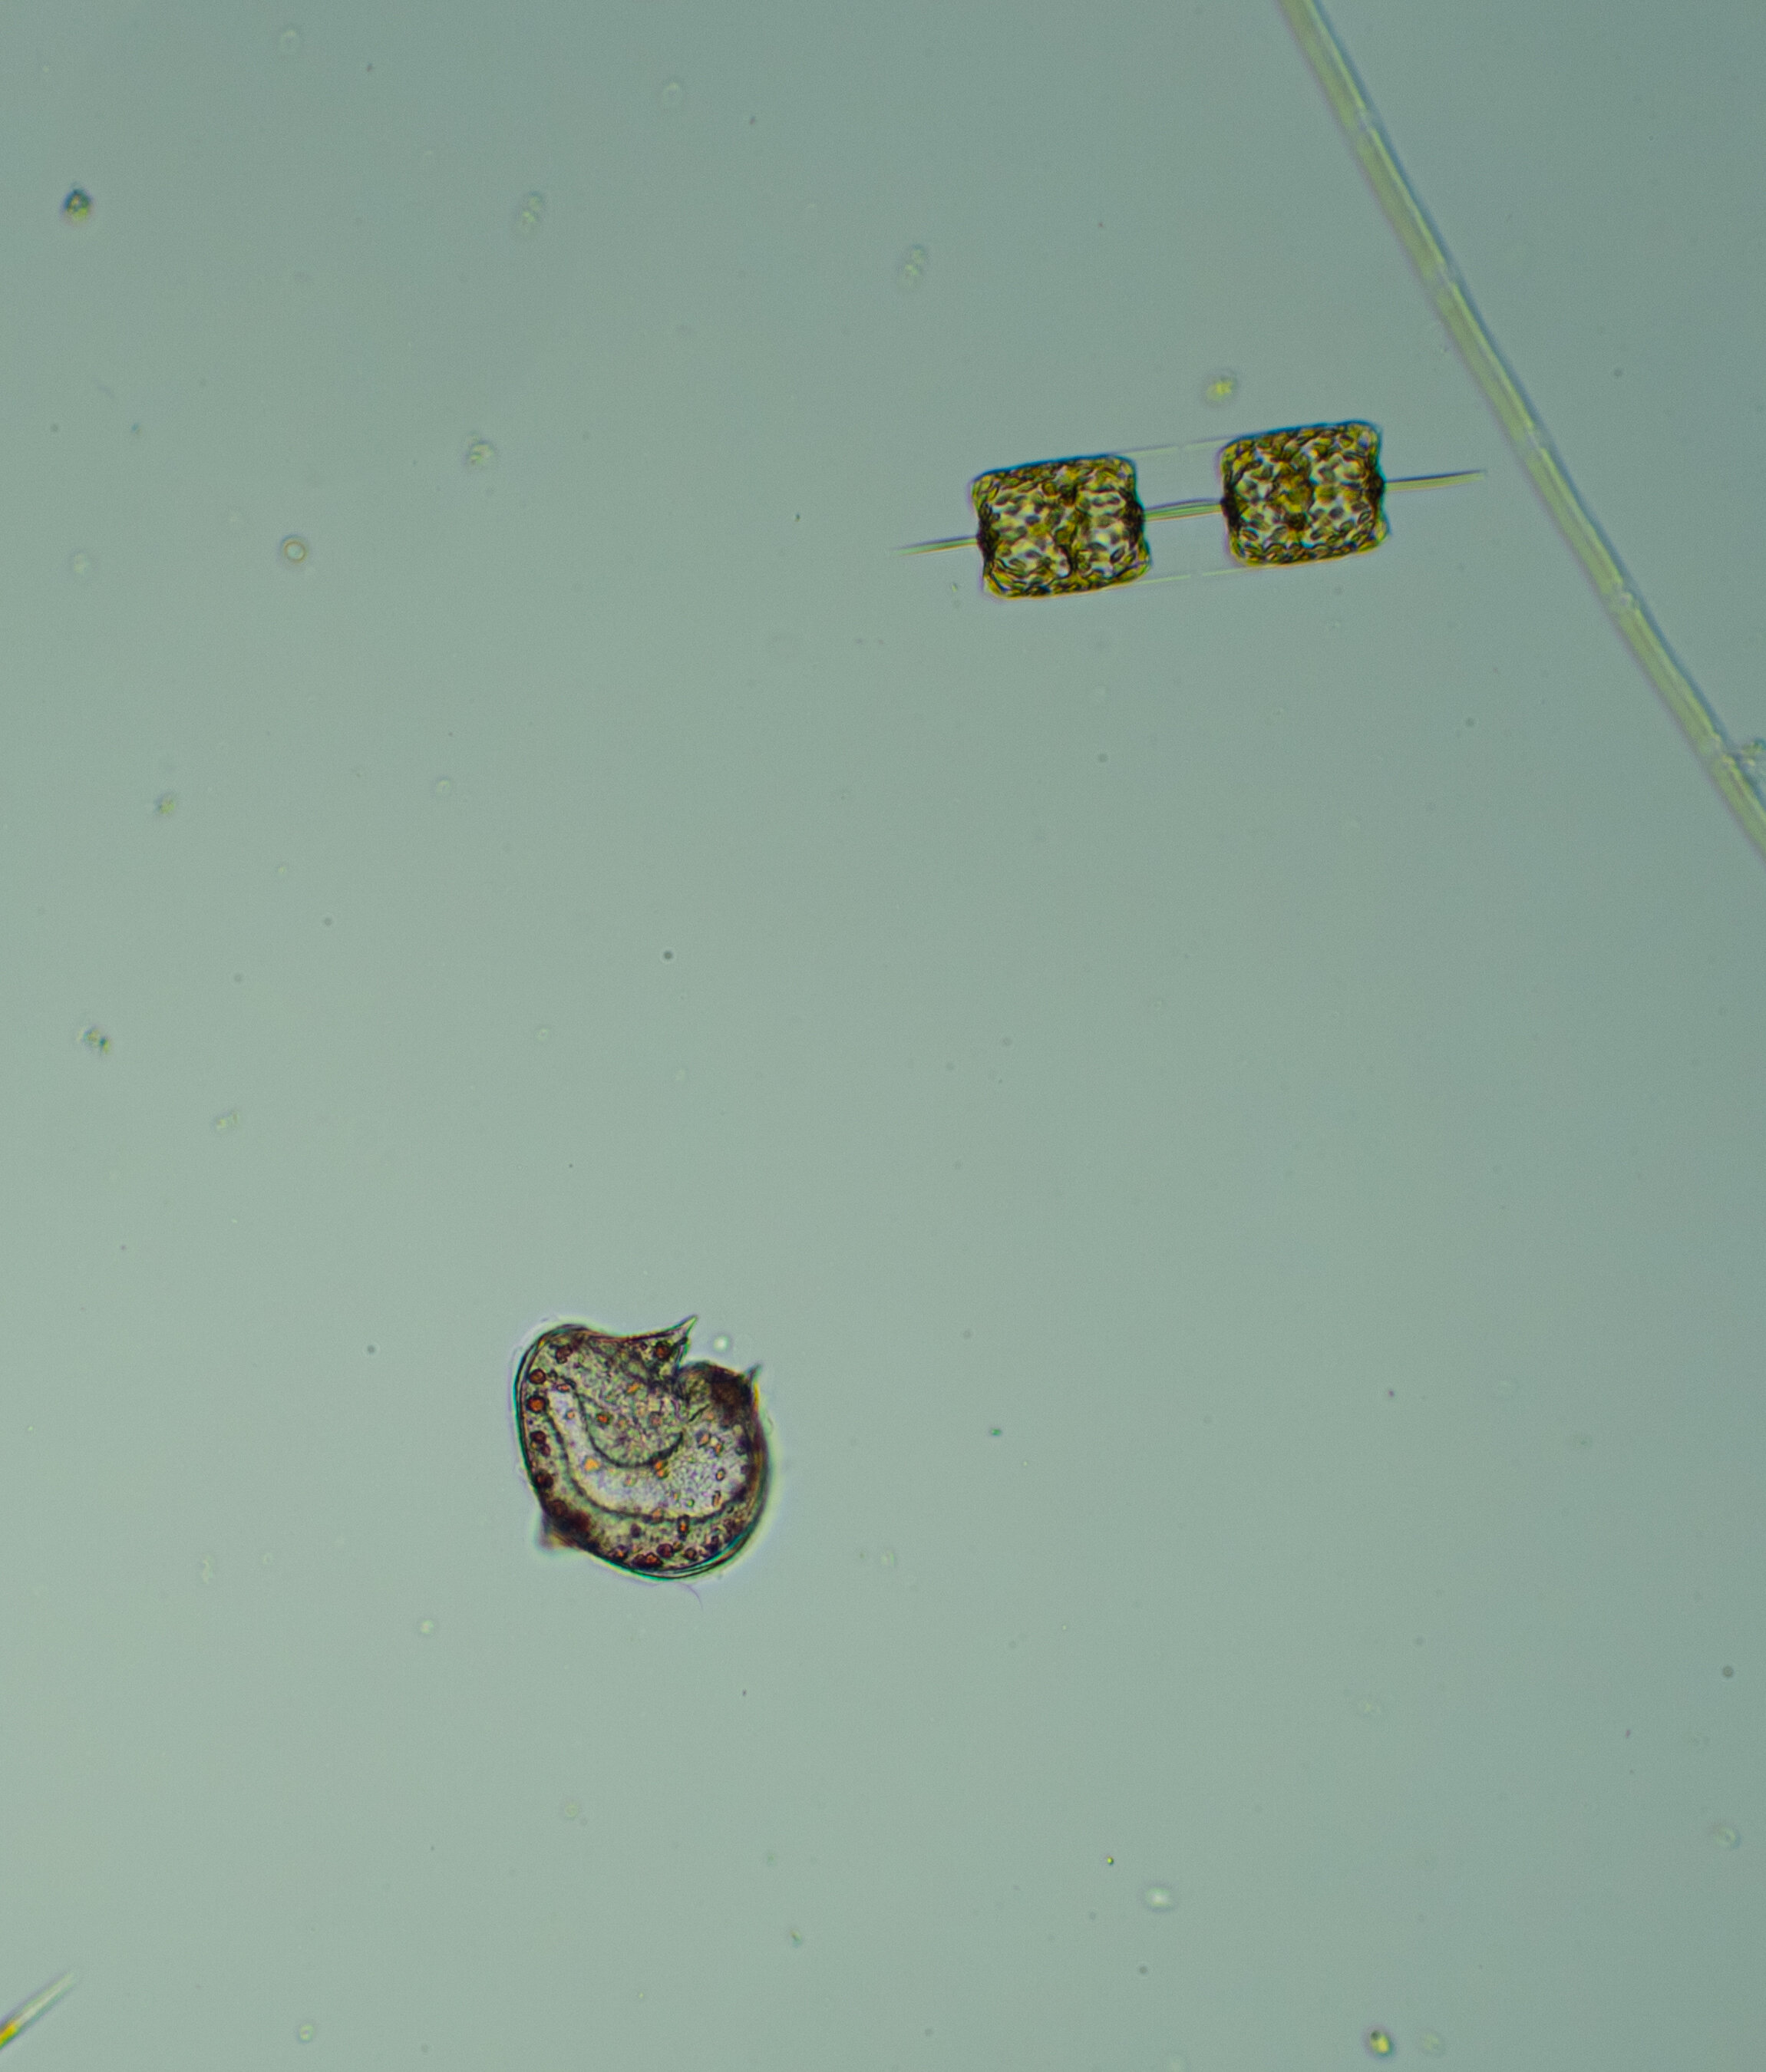 Protoperidinium sp. (lower left)